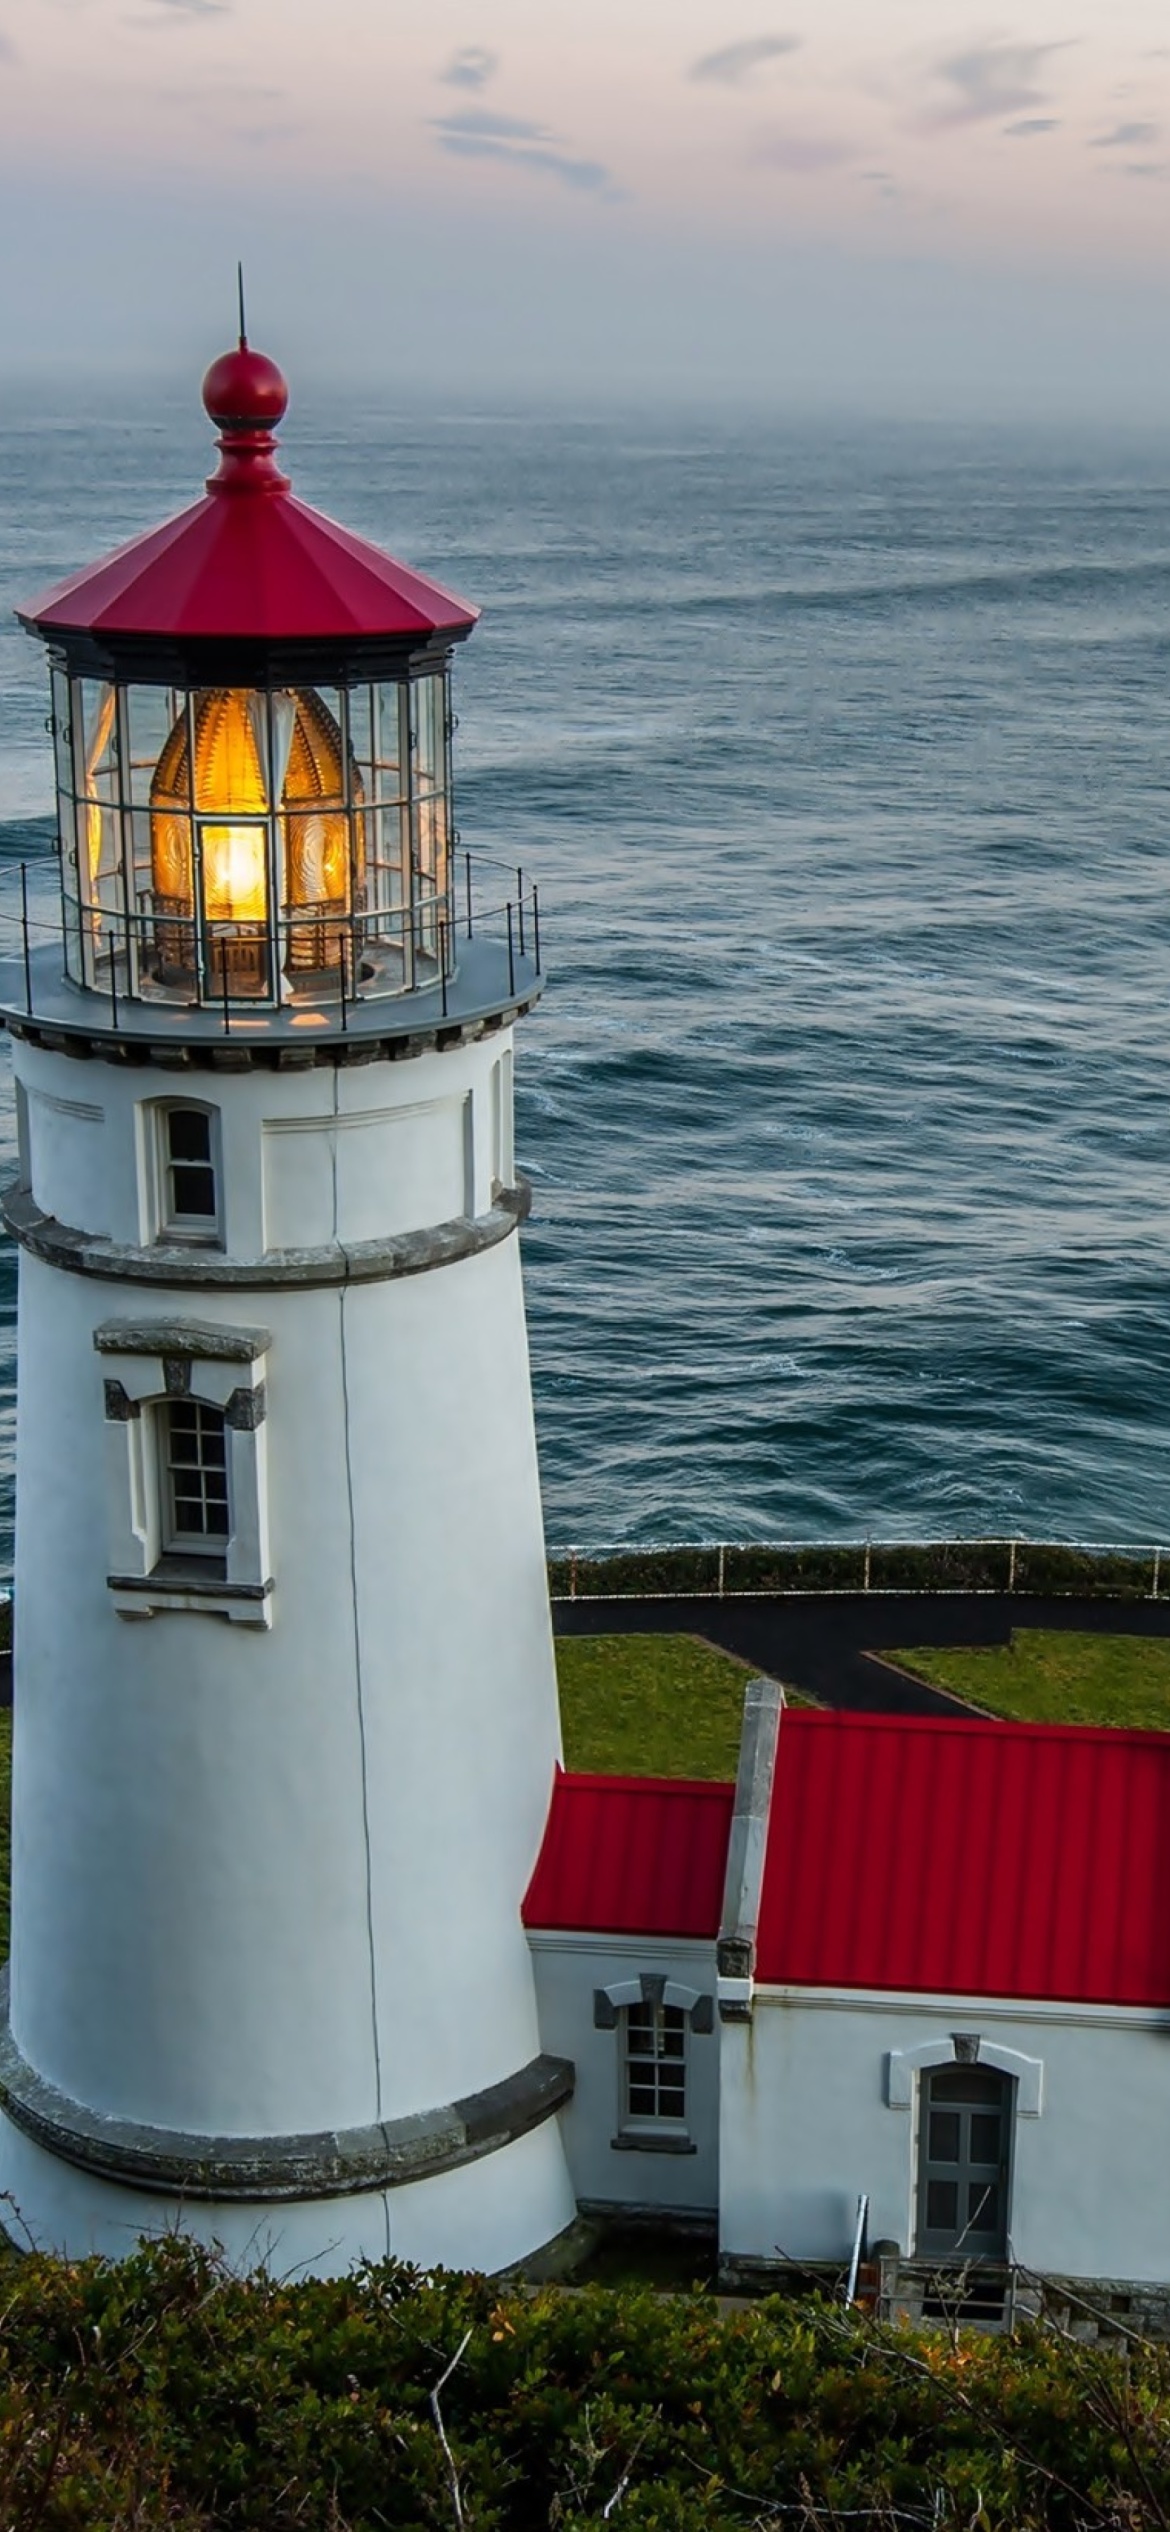 Обои Lighthouse at North Sea 1170x2532